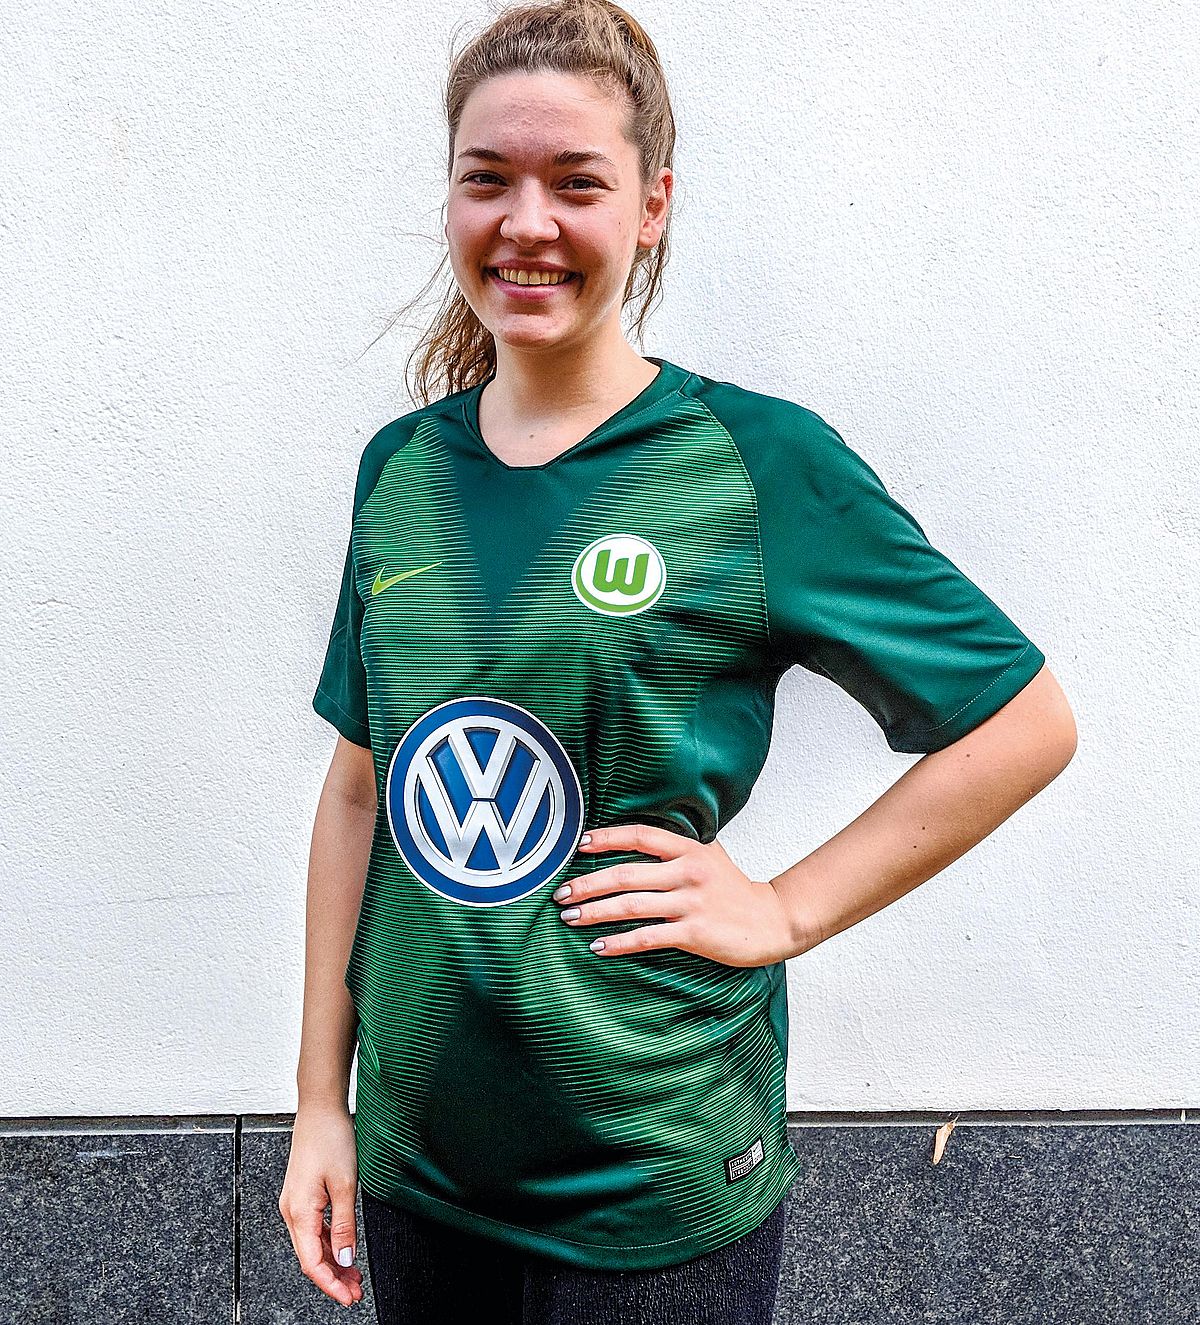 Der VfL Wolfsburg ist Trikotmeister der Bundesligasaison 2018/19